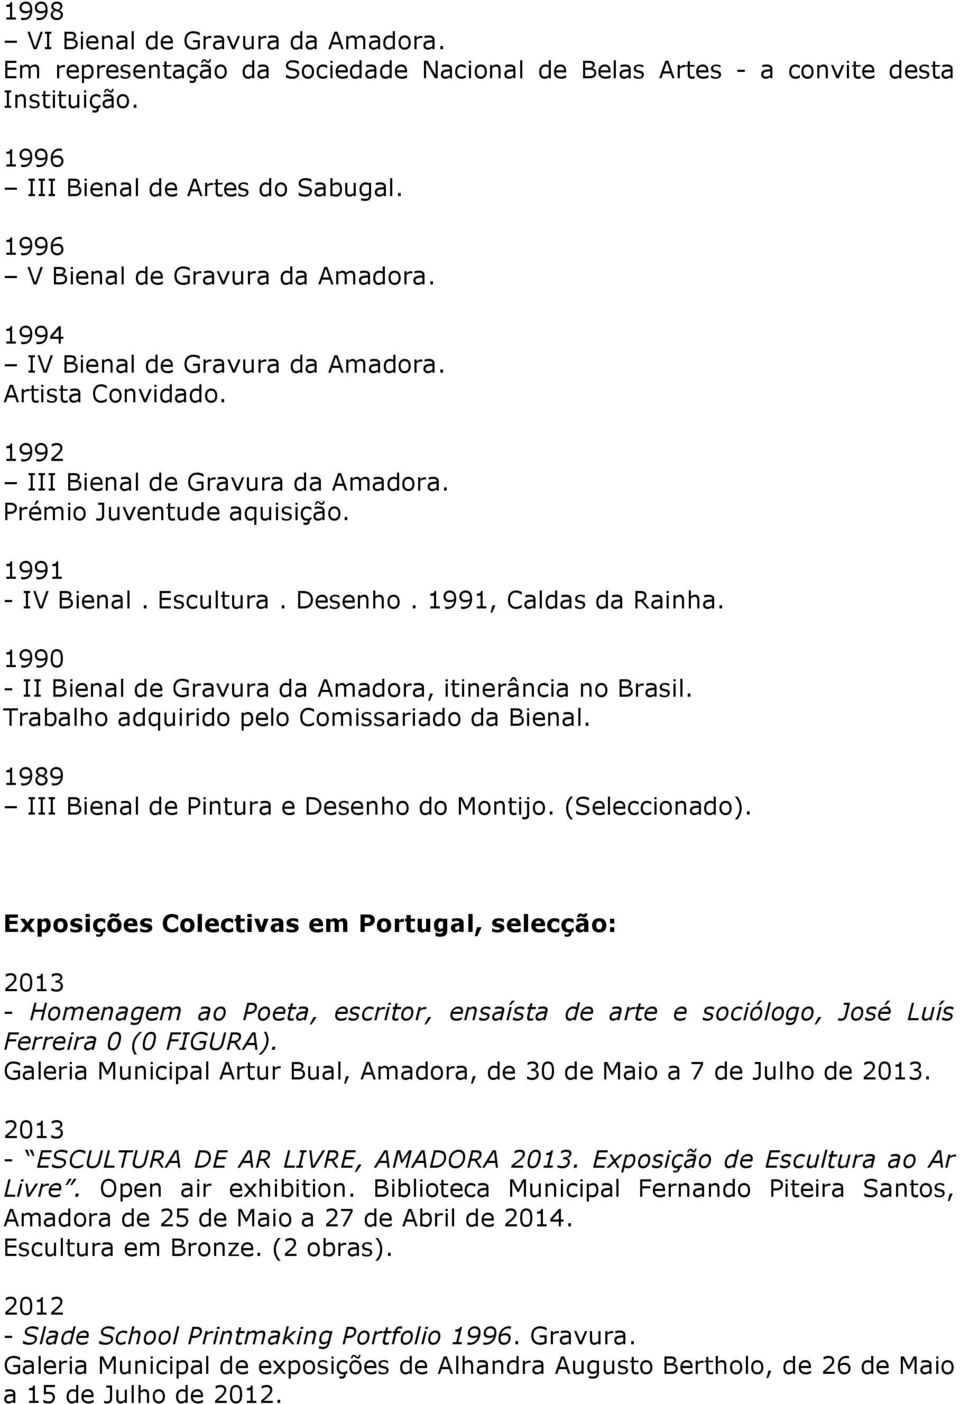 1990 - II Bienal de Gravura da Amadora, itinerância no Brasil. Trabalho adquirido pelo Comissariado da Bienal. 1989 III Bienal de Pintura e Desenho do Montijo. (Seleccionado).